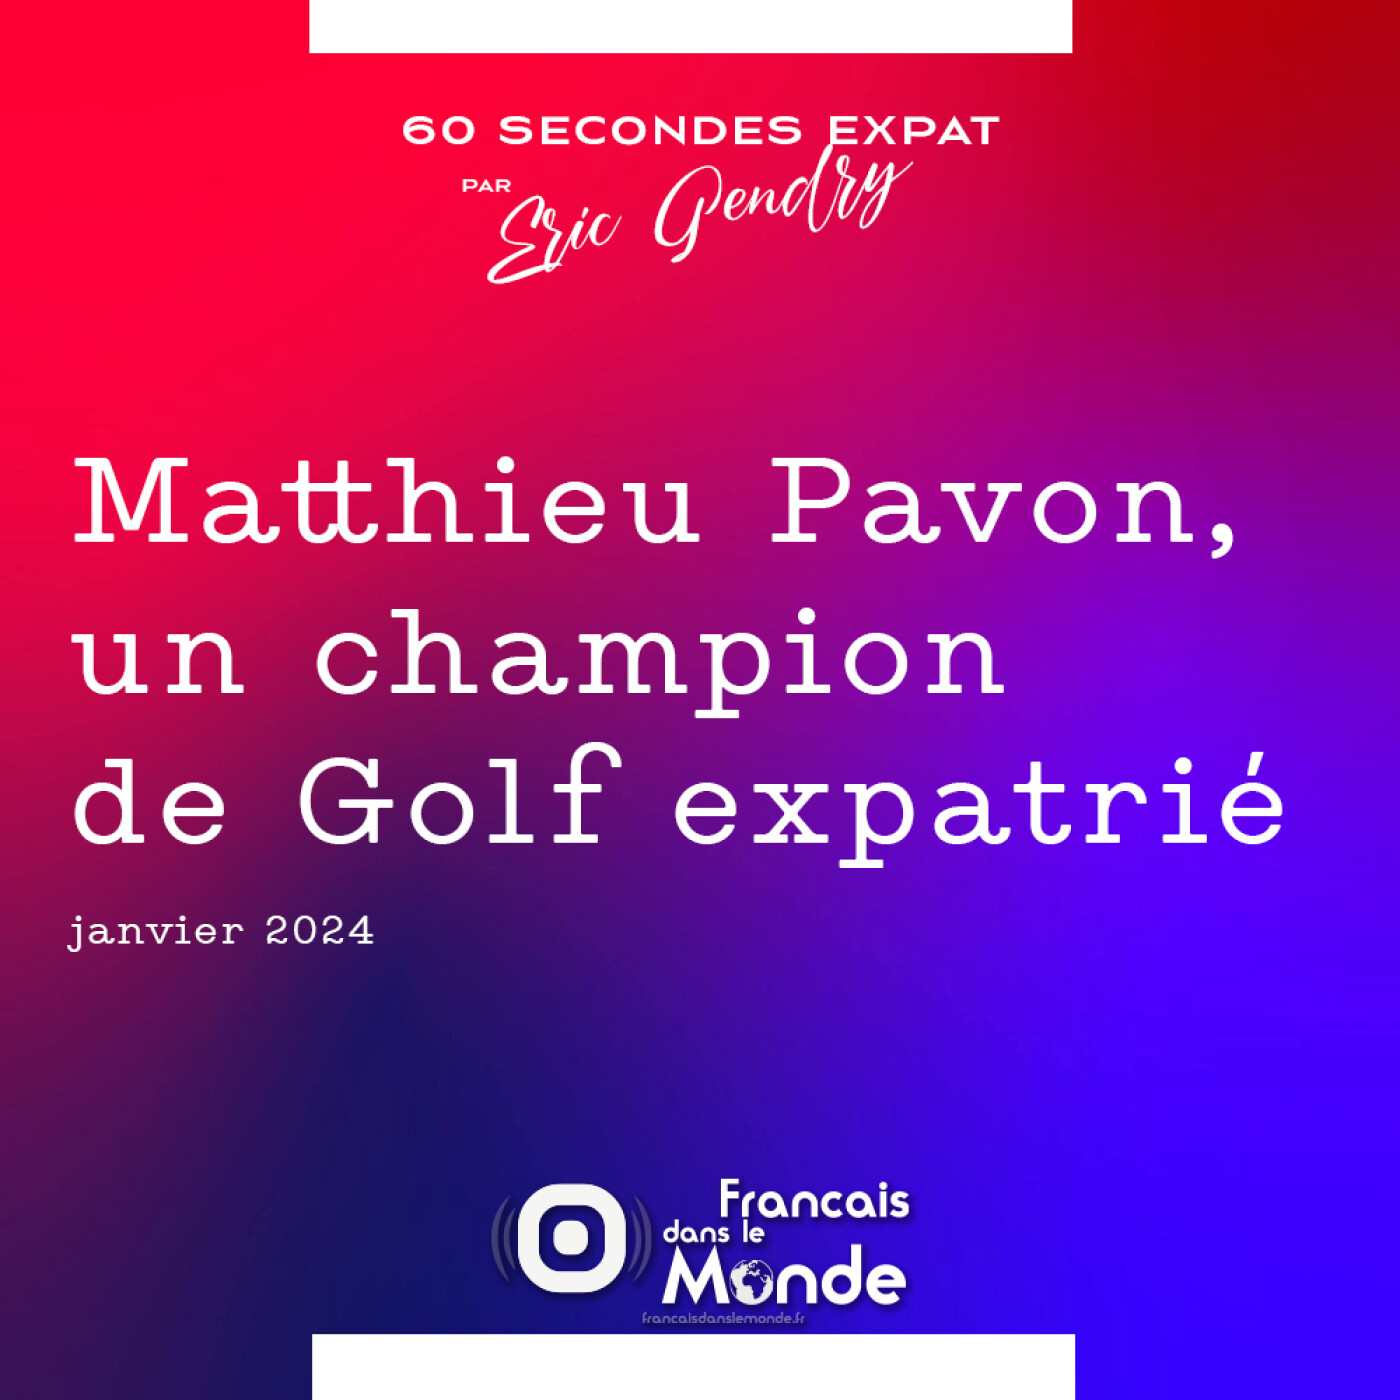 Matthieu Pavon, un champion de Golf expatrié